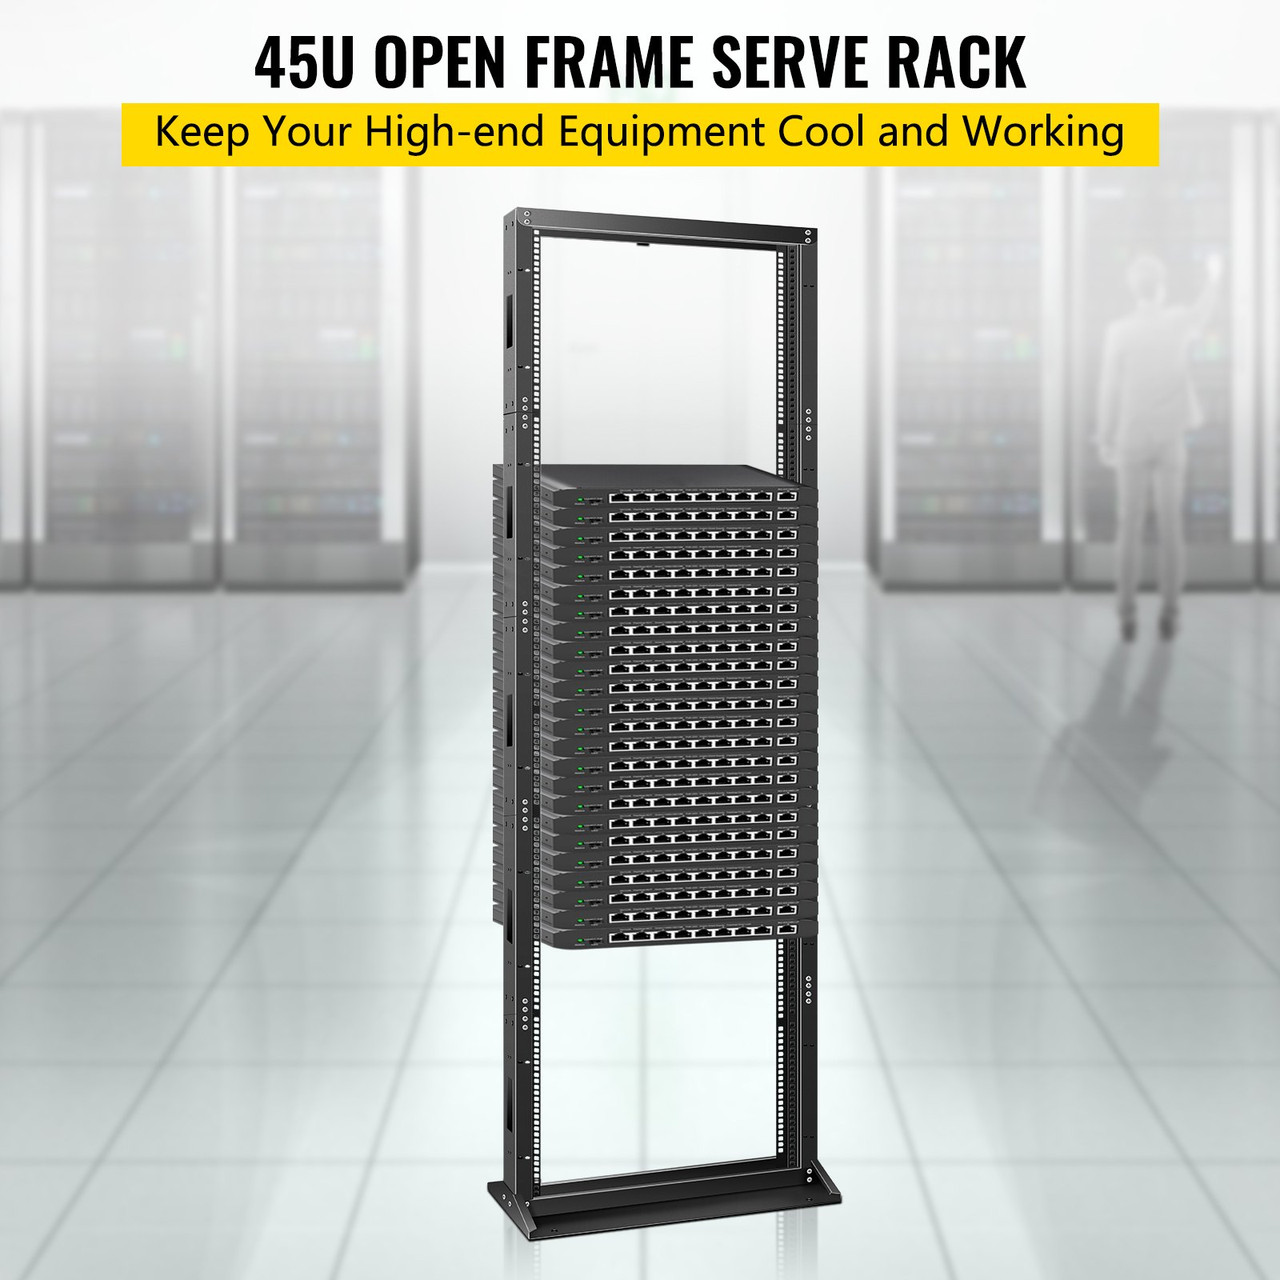 Server Rack, 45U Open Frame Rack, 2-Post IT Server Network Relay Rack, 23 Inch Server/Audio Network Equipment Rack Cold Rolled Steel, Heavy Duty Threaded Rack, Holds Network Servers & AV Gear